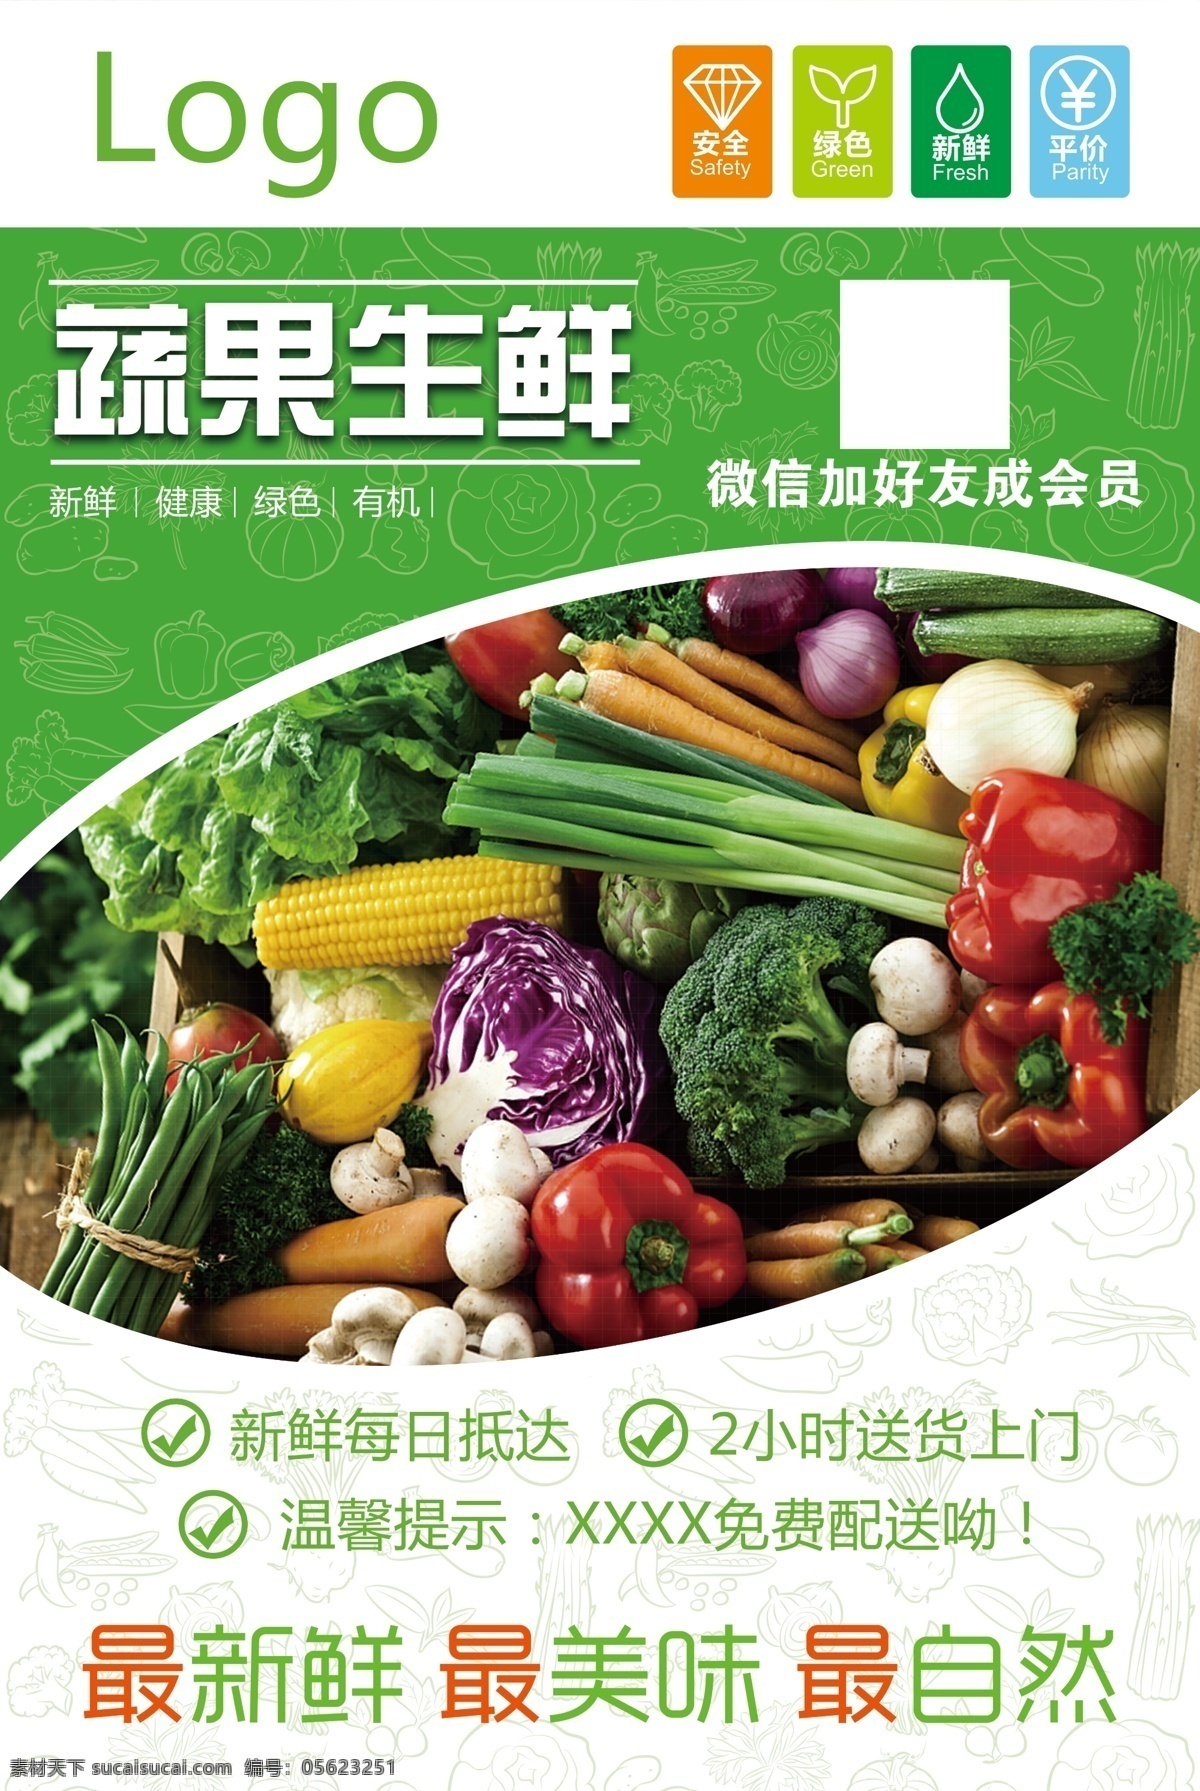 超市 便利店 水果 蔬菜店 灯箱 海报 蔬菜 店 分层